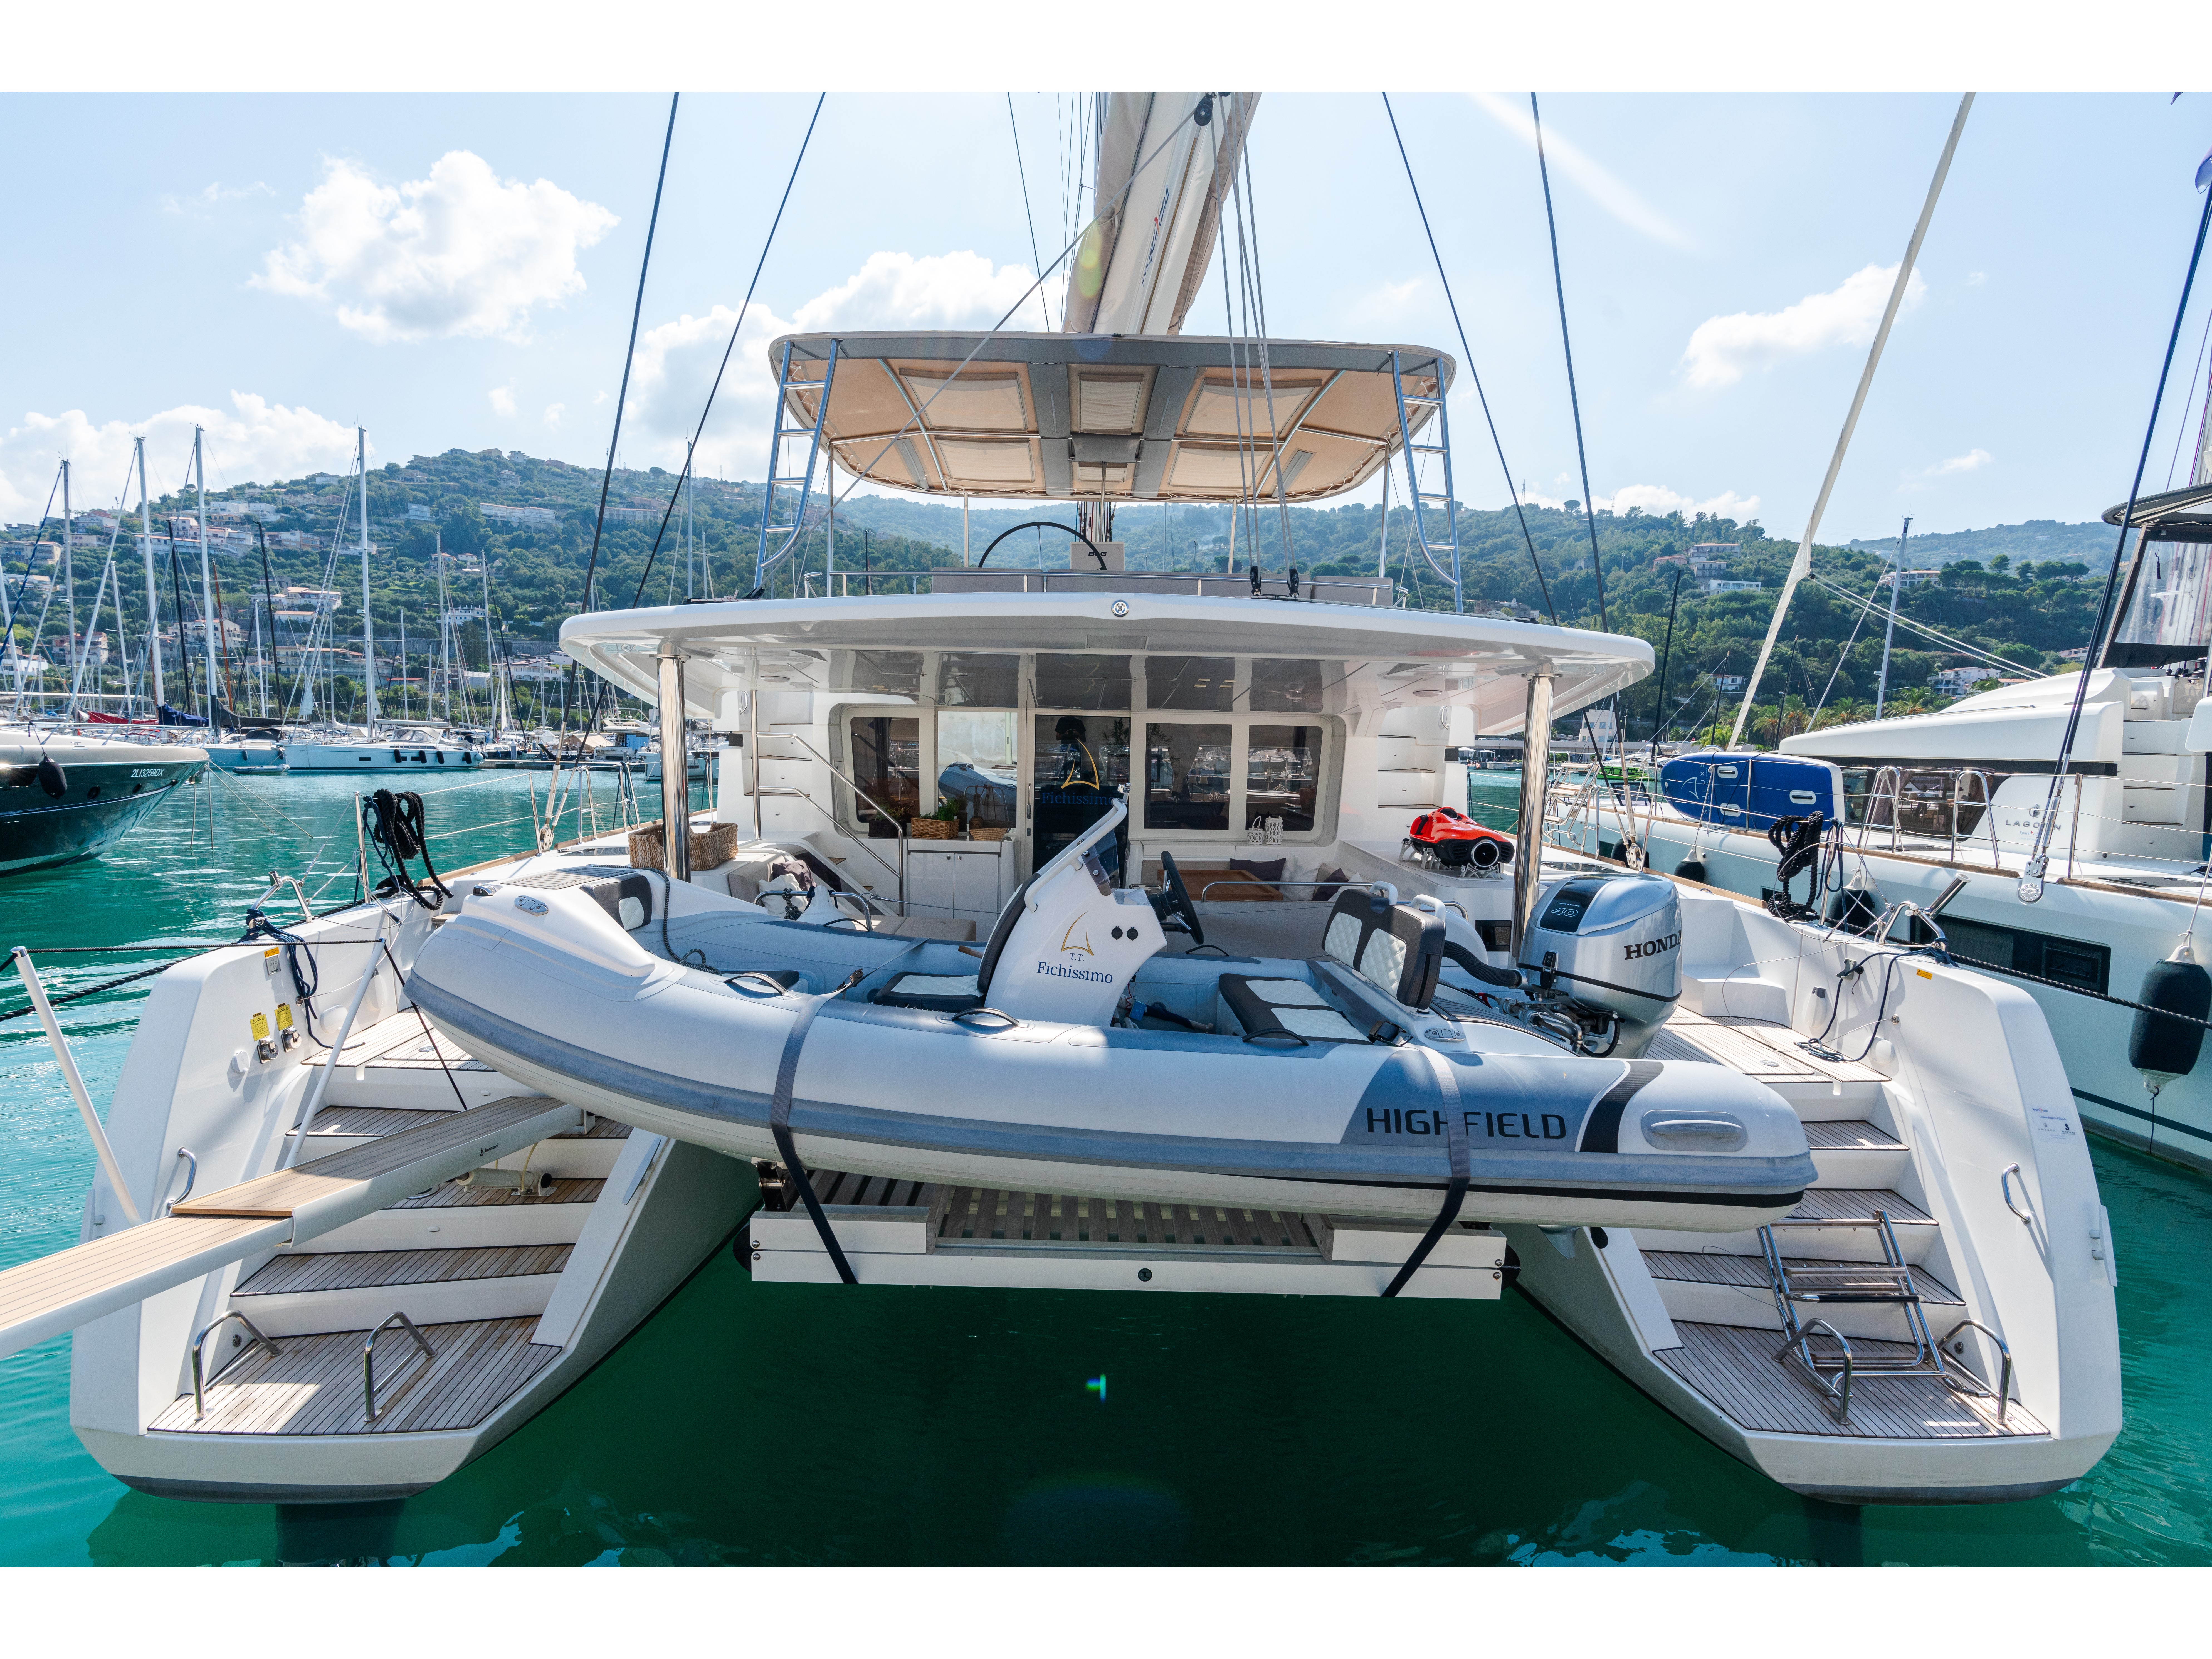 Lagoon 52F - Luxury yacht charter Italy & Boat hire in Italy Sicily Aeolian Islands Capo d'Orlando Capo d'Orlando Marina 2